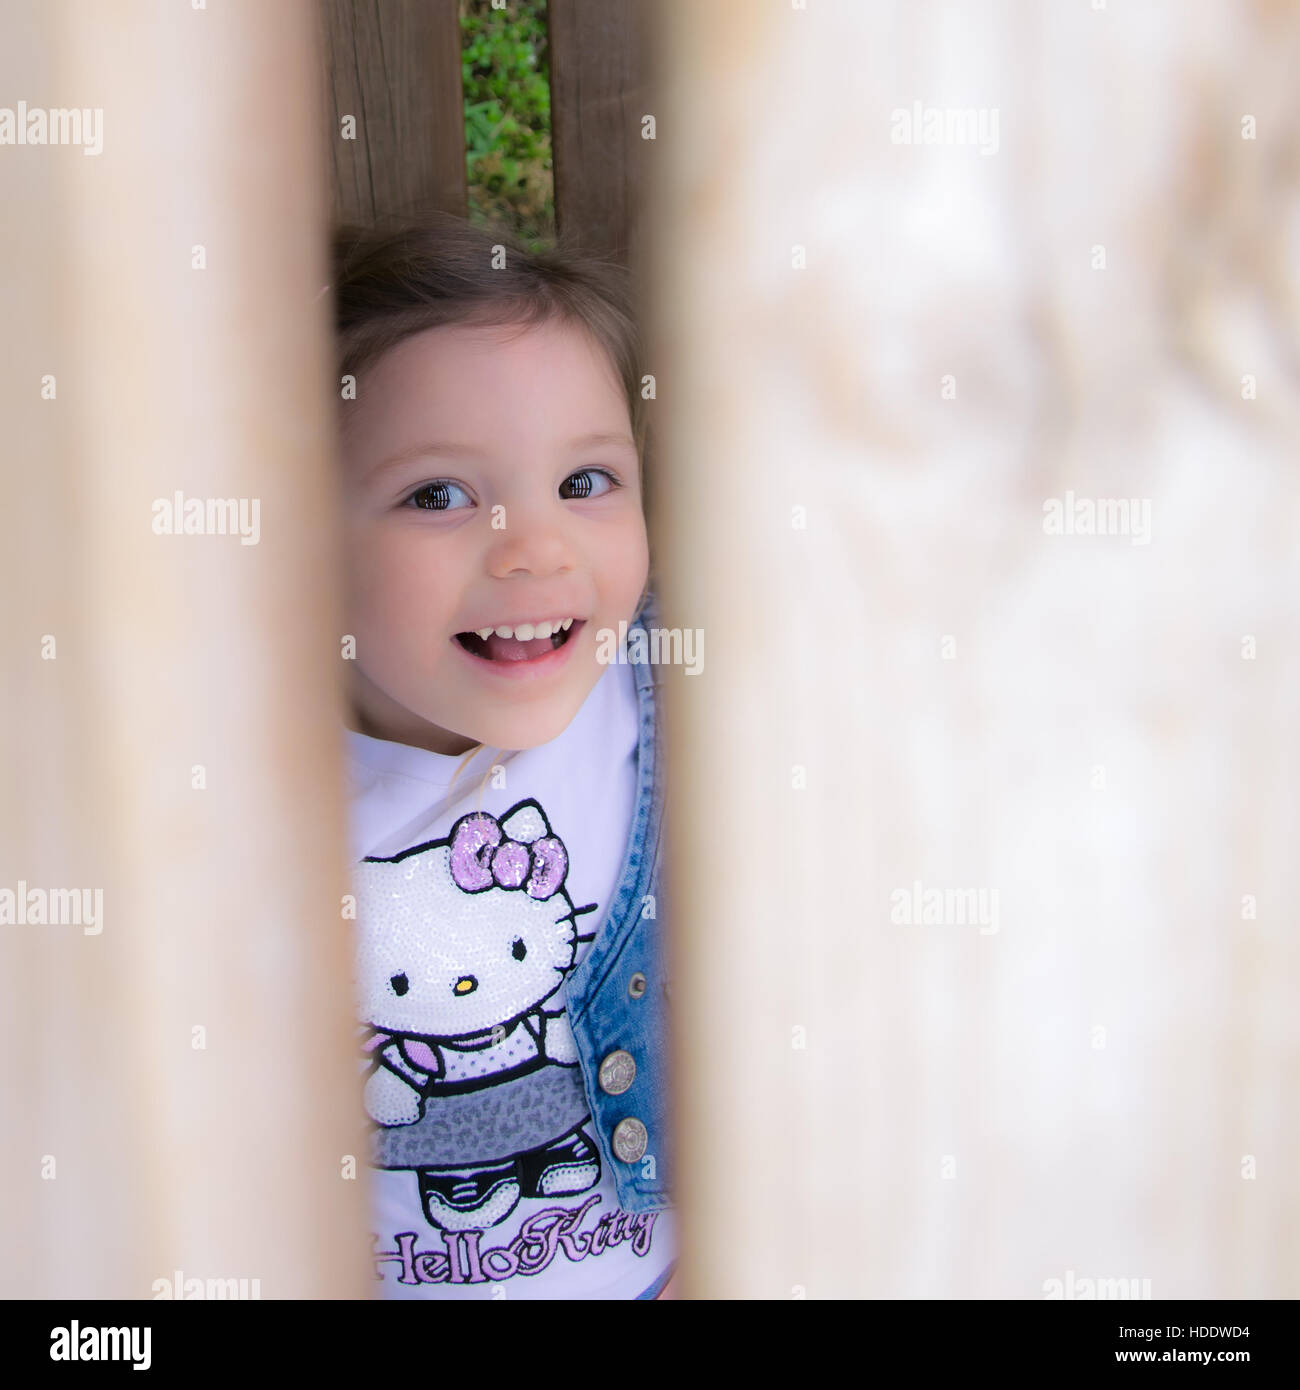 Verona, Italien - 29. März 2015: Kind mit Hello Kitty Shirt lacht versteckt hinter einem Holzzaun. Stockfoto